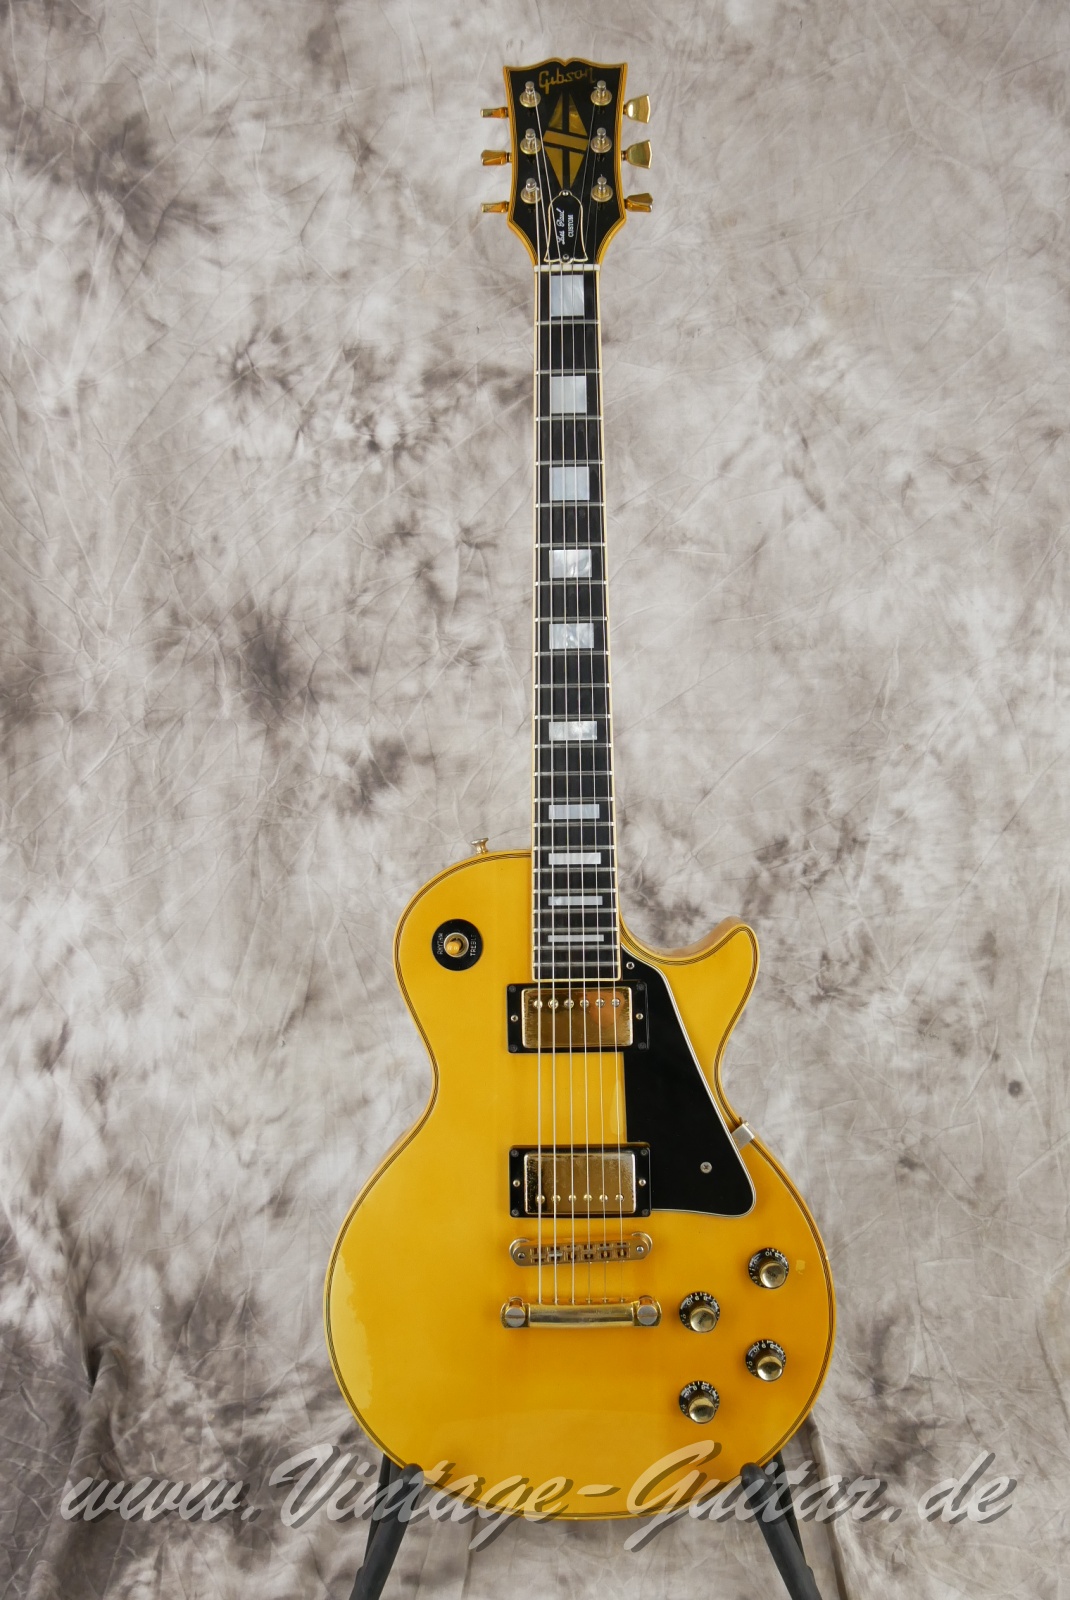 Gibson_Les Paul_Custom_alpine_white_1977-001.JPG